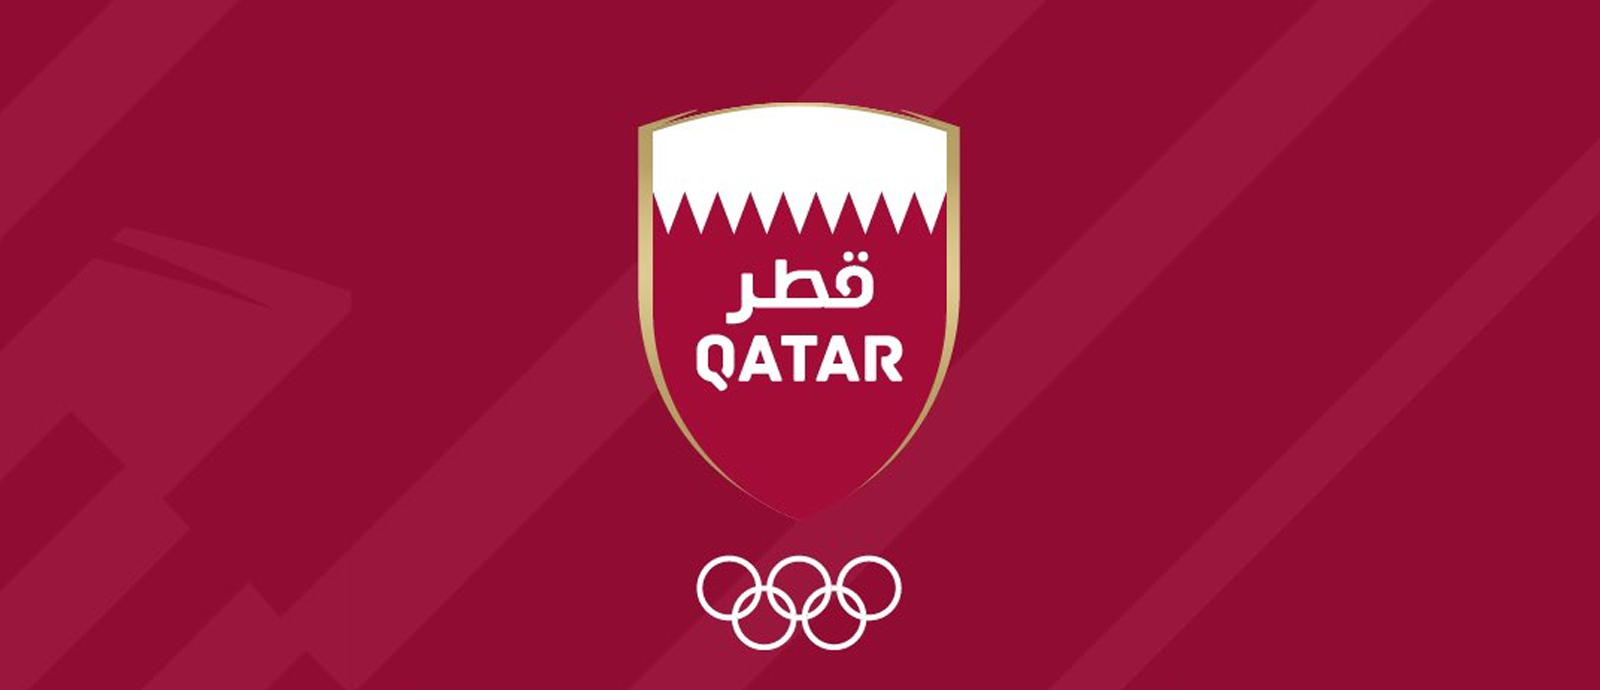 شعار اللجنة الأولمبية القطرية